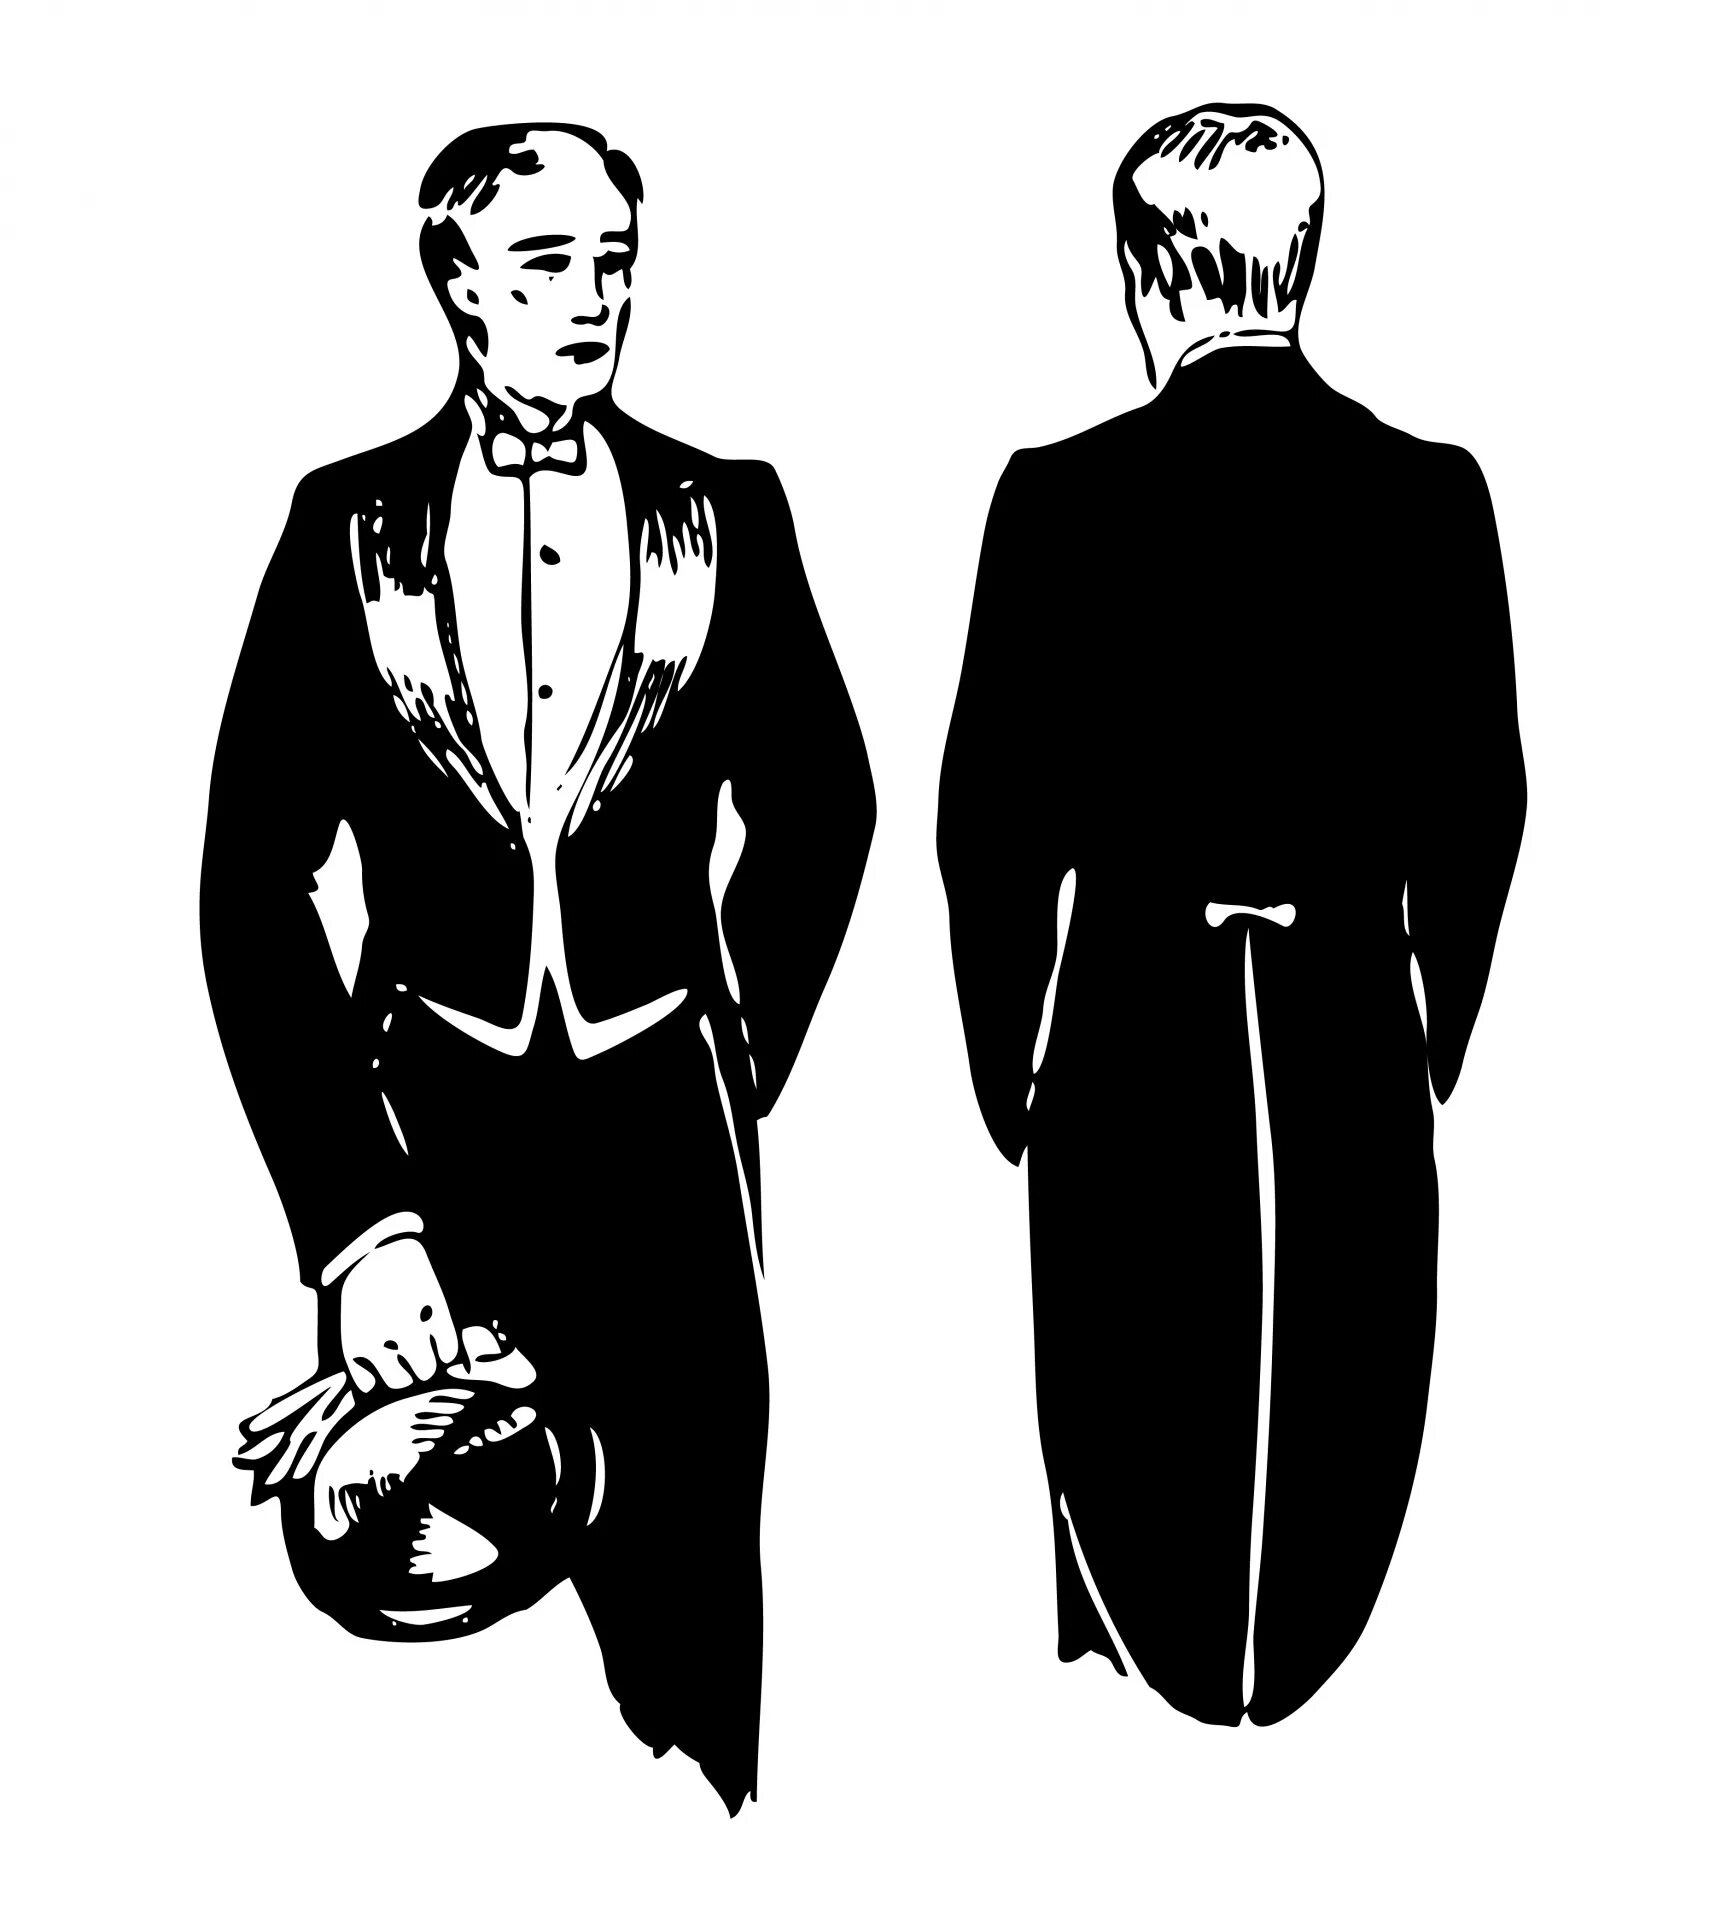 Сюртук также считался. Мужской костюм 19 века сюртук. Фрак смокинг сюртук. Мужской фрак. Мужчина во фраке.